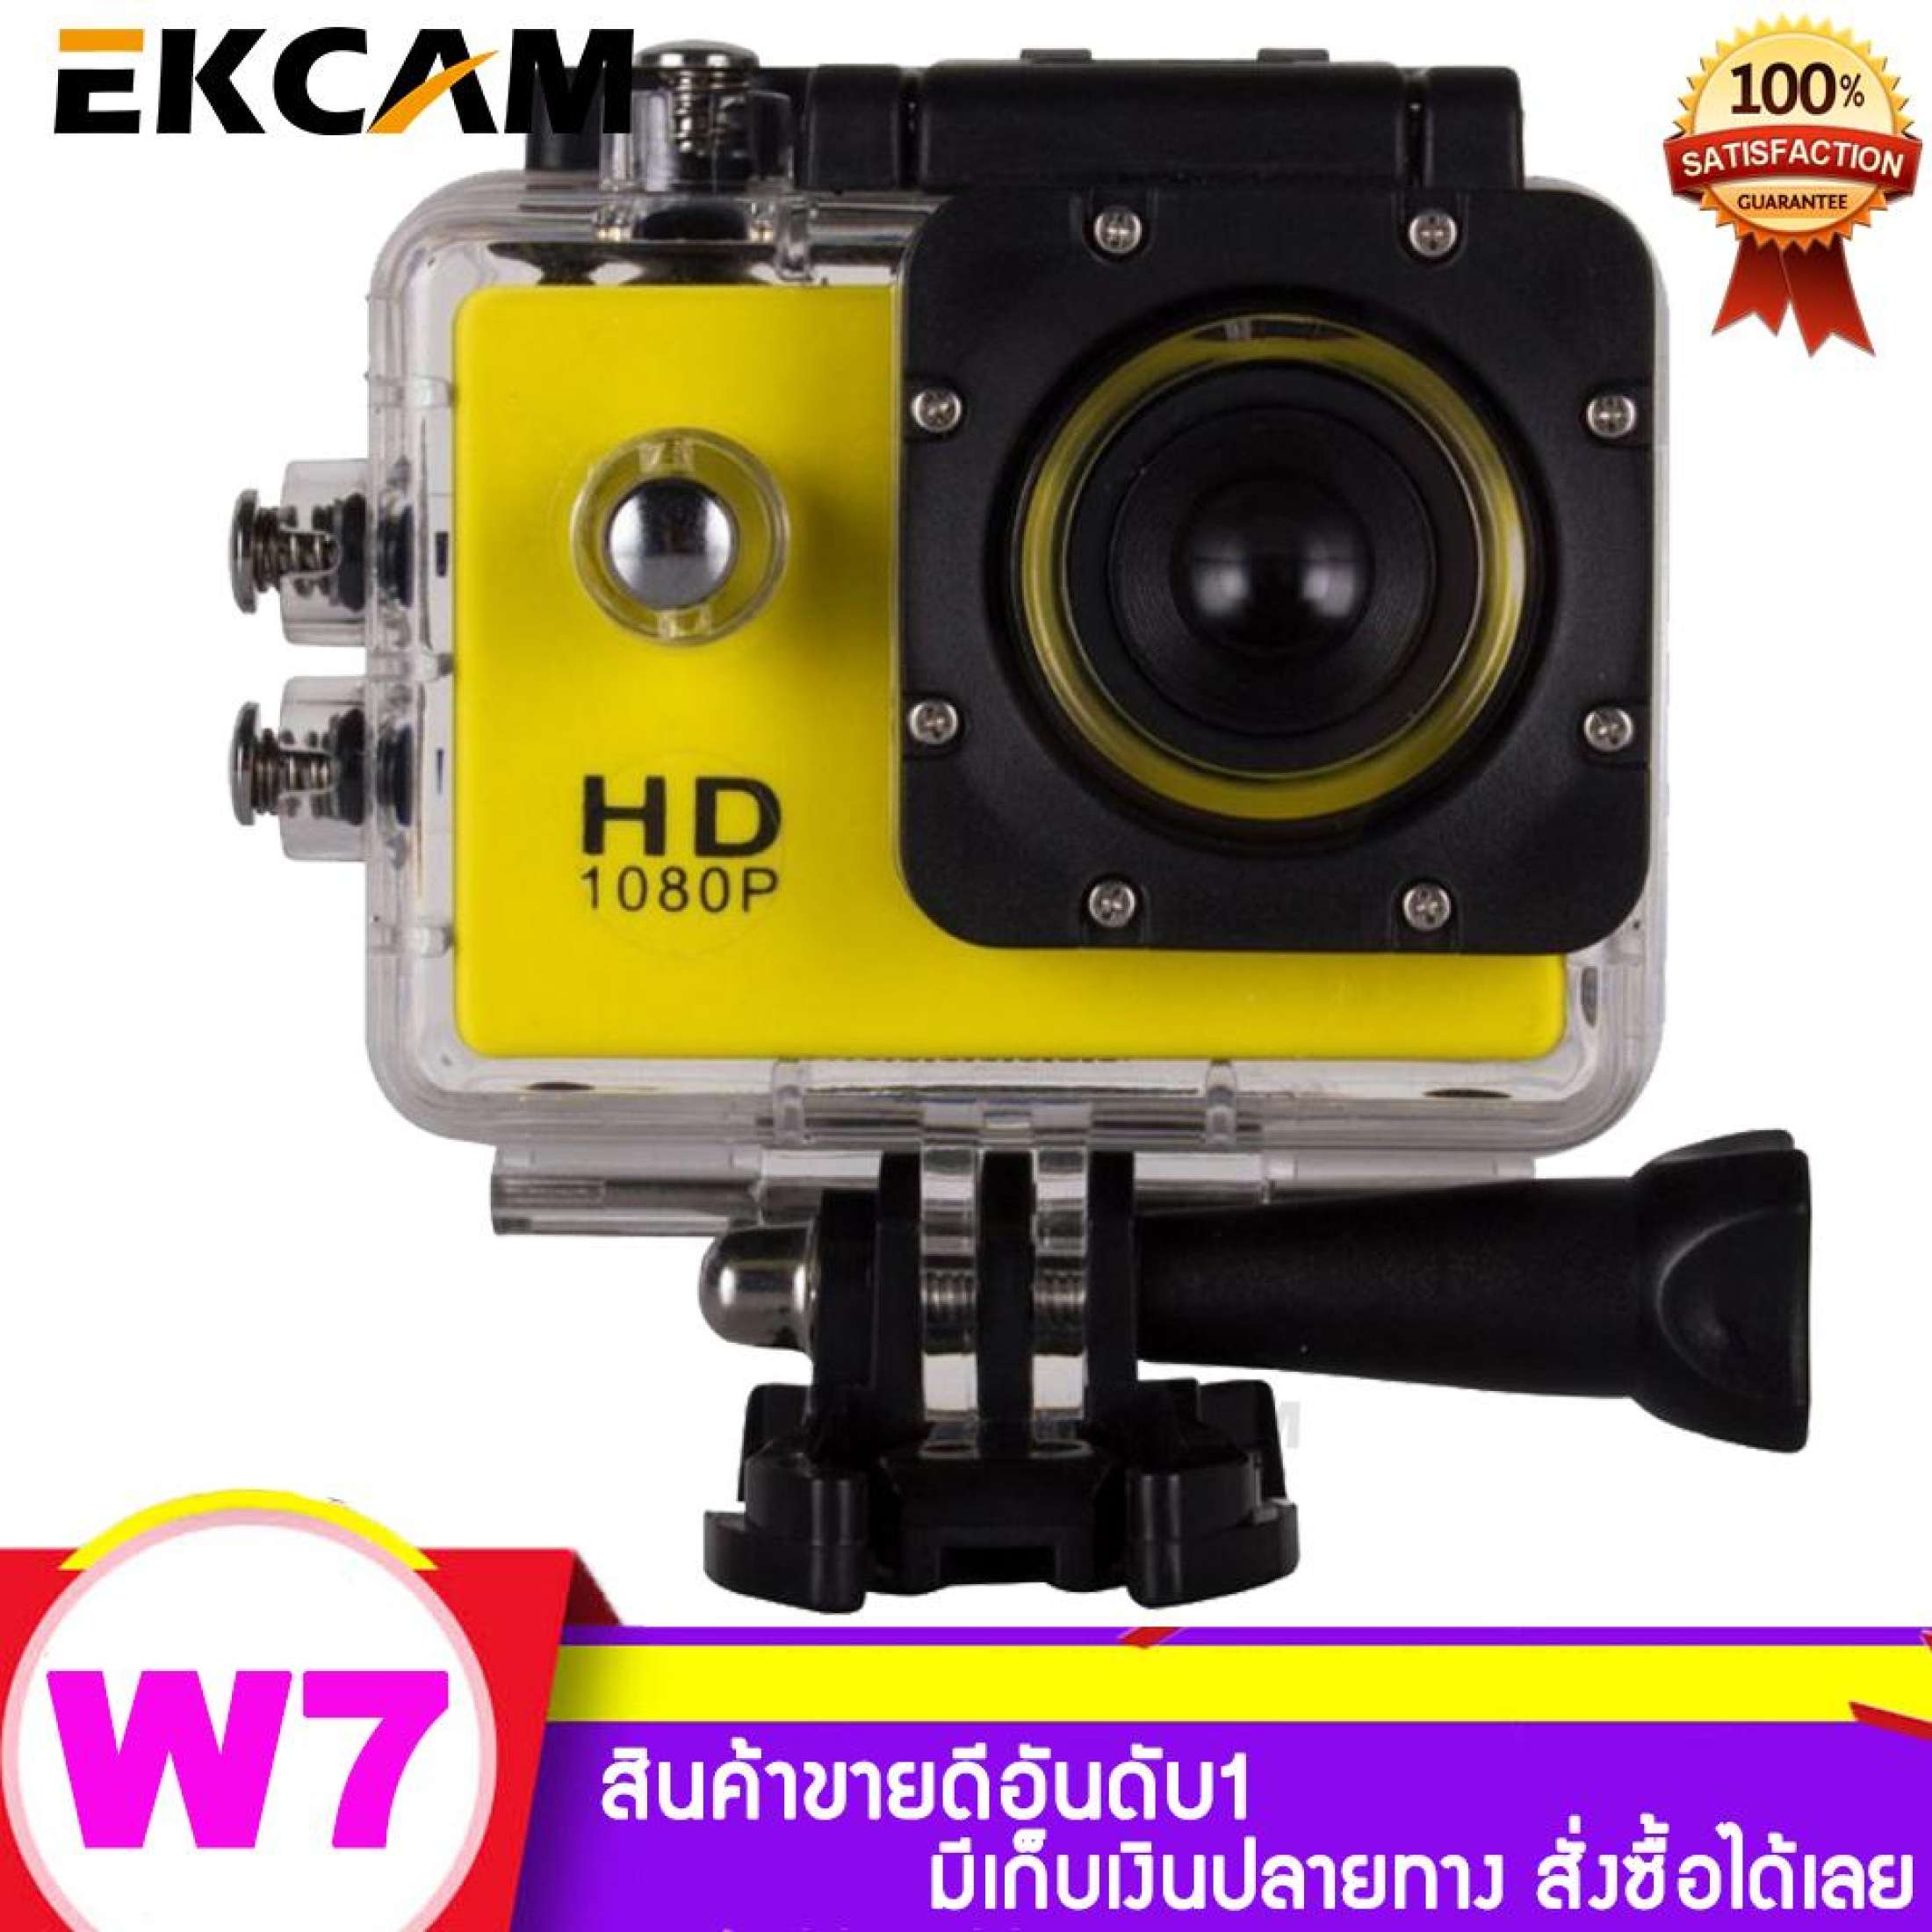 กล้องกันน้ำ Sport Camera Full HD 1080P จอ 2.0 นิ้ว กันน้ำลึก 30 m.